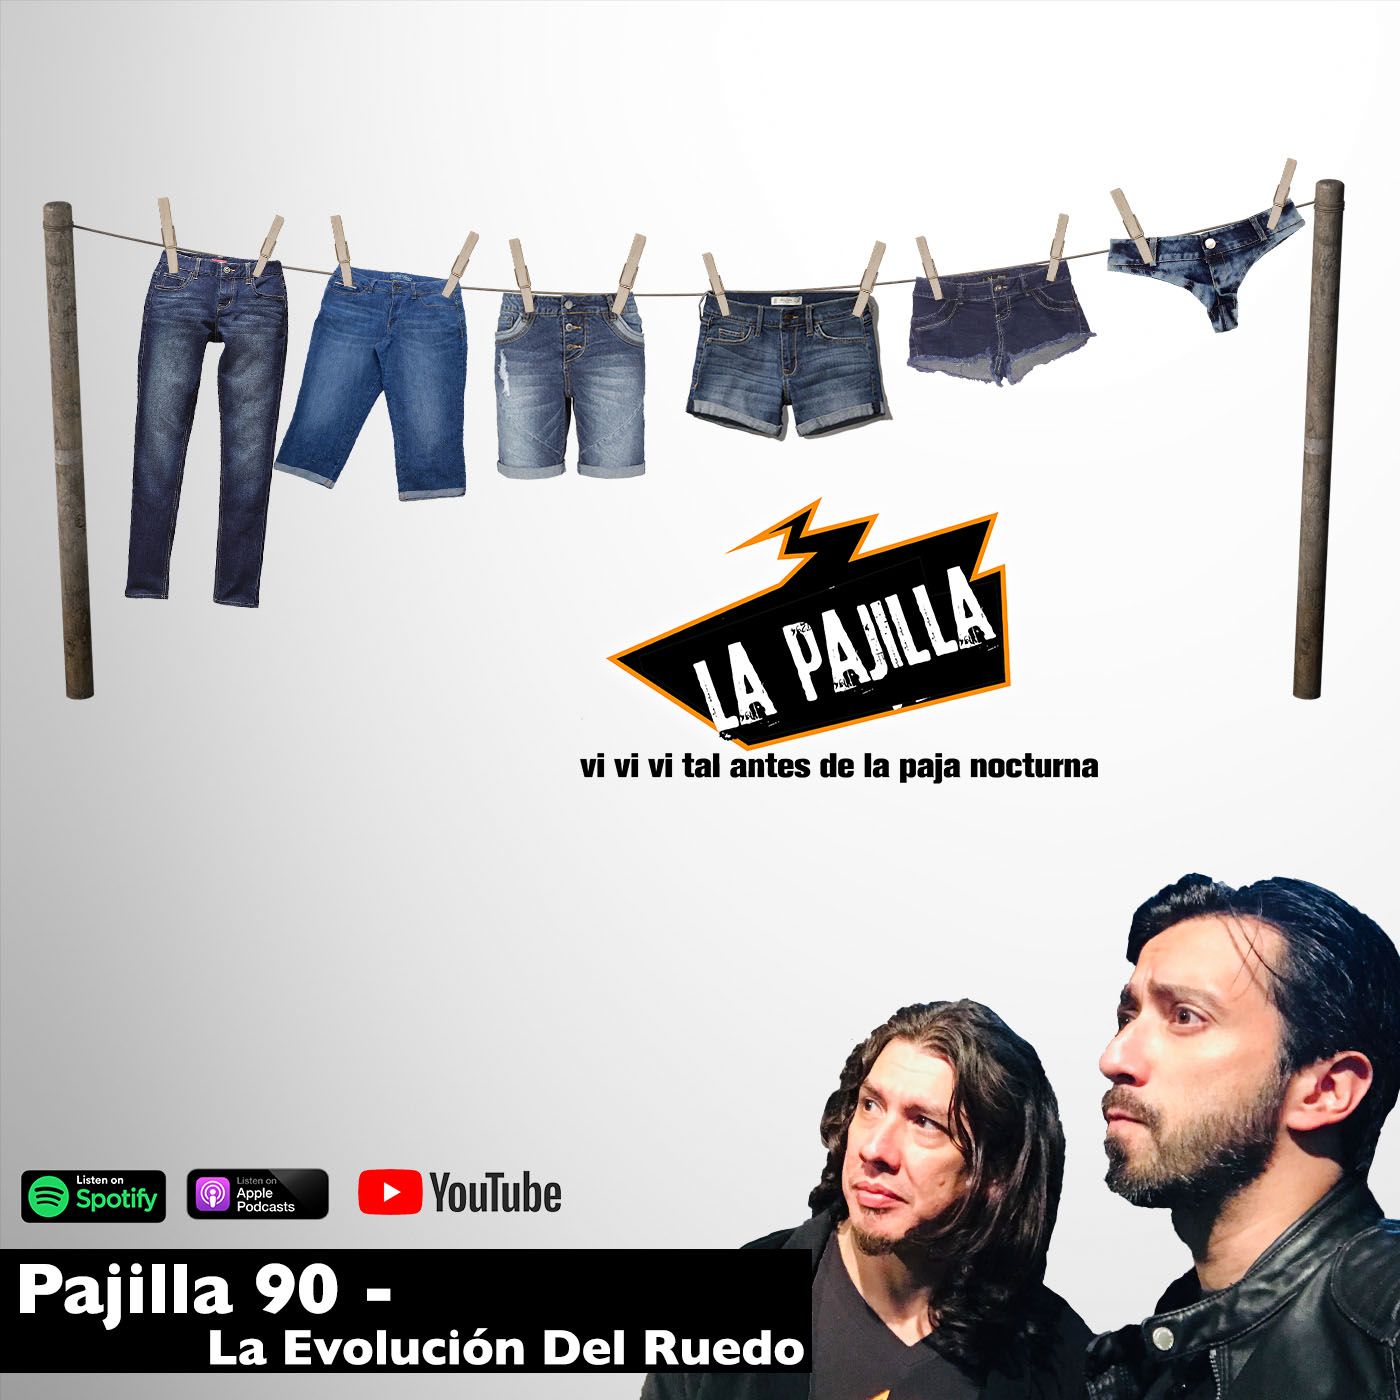 La Paja Nocturna Podcast CR Pajilla 90